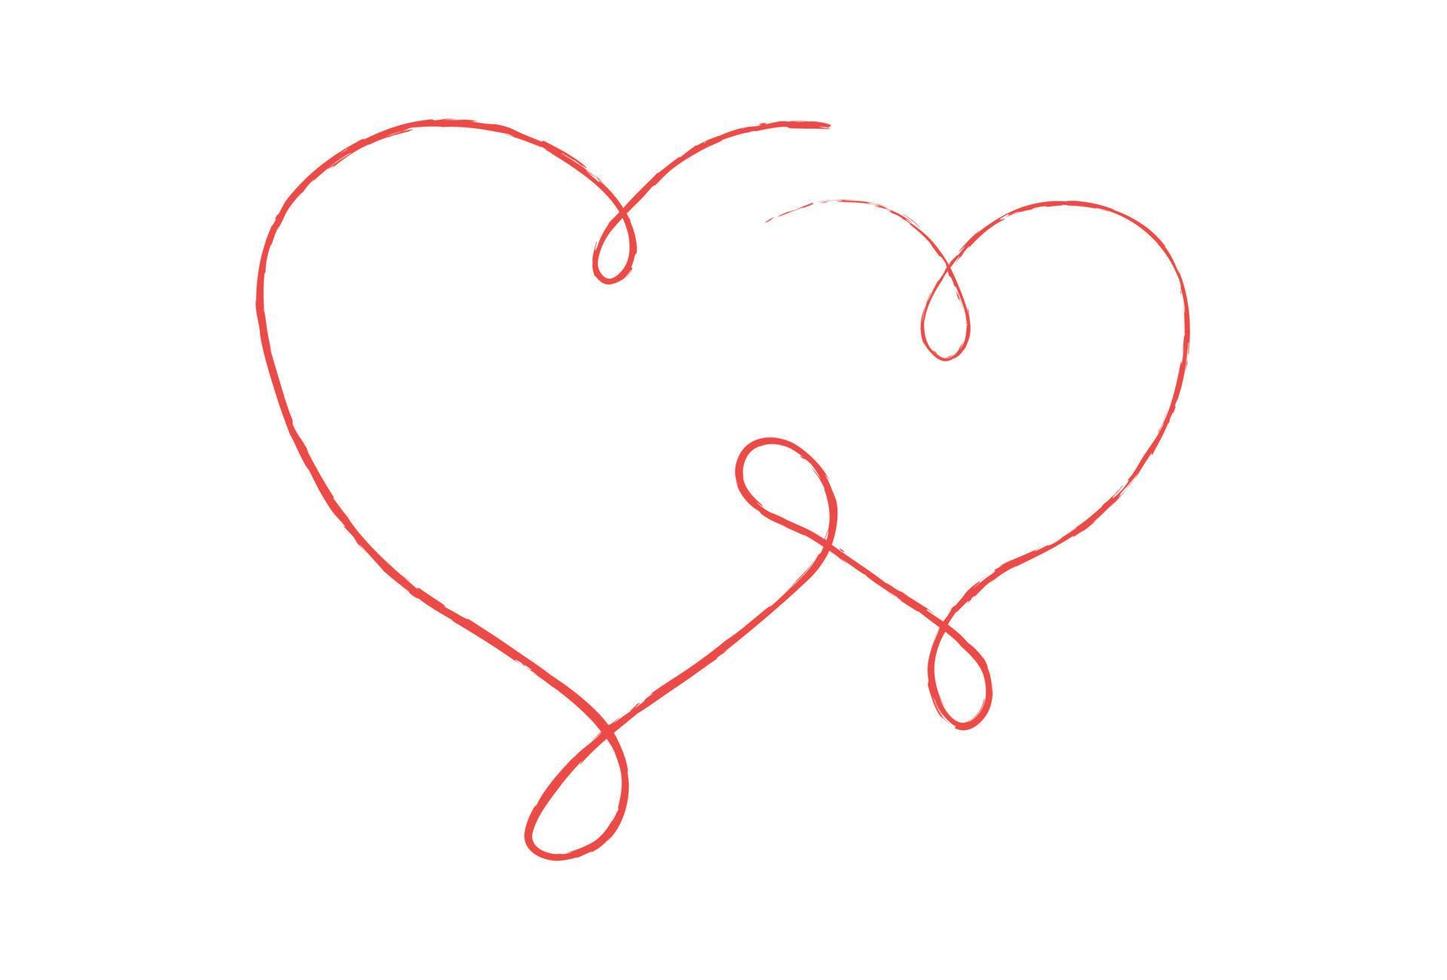 lignes fines rouges deux coeurs d'amour sur fond blanc - vecteur